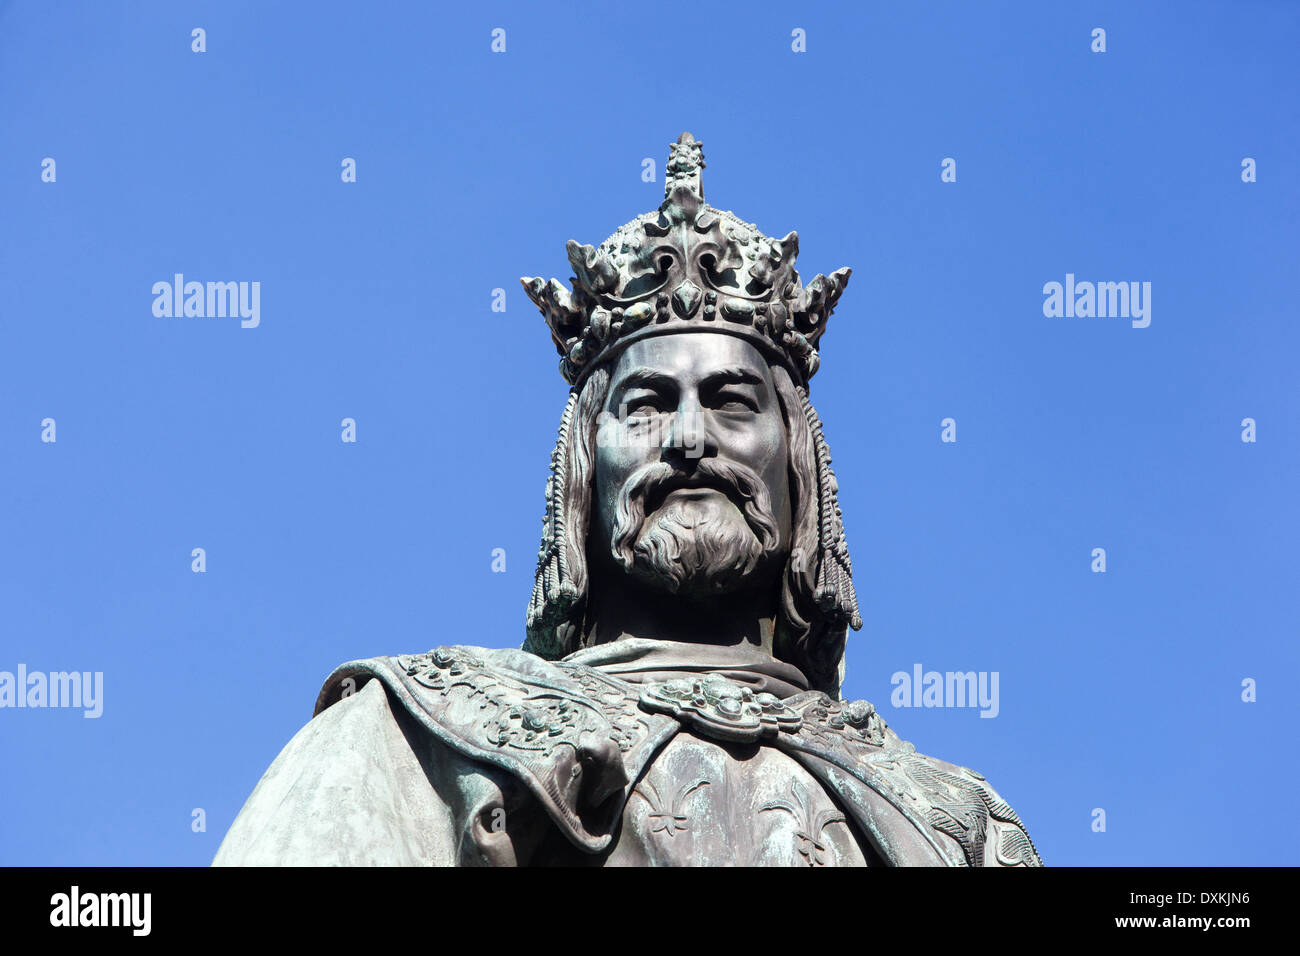 L'empereur Charles IV, l'empereur Saint-Romain et le roi tchèque bien-aimé, les chevaliers de la Croix, près du pont Charles, Prague, République Tchèque Banque D'Images